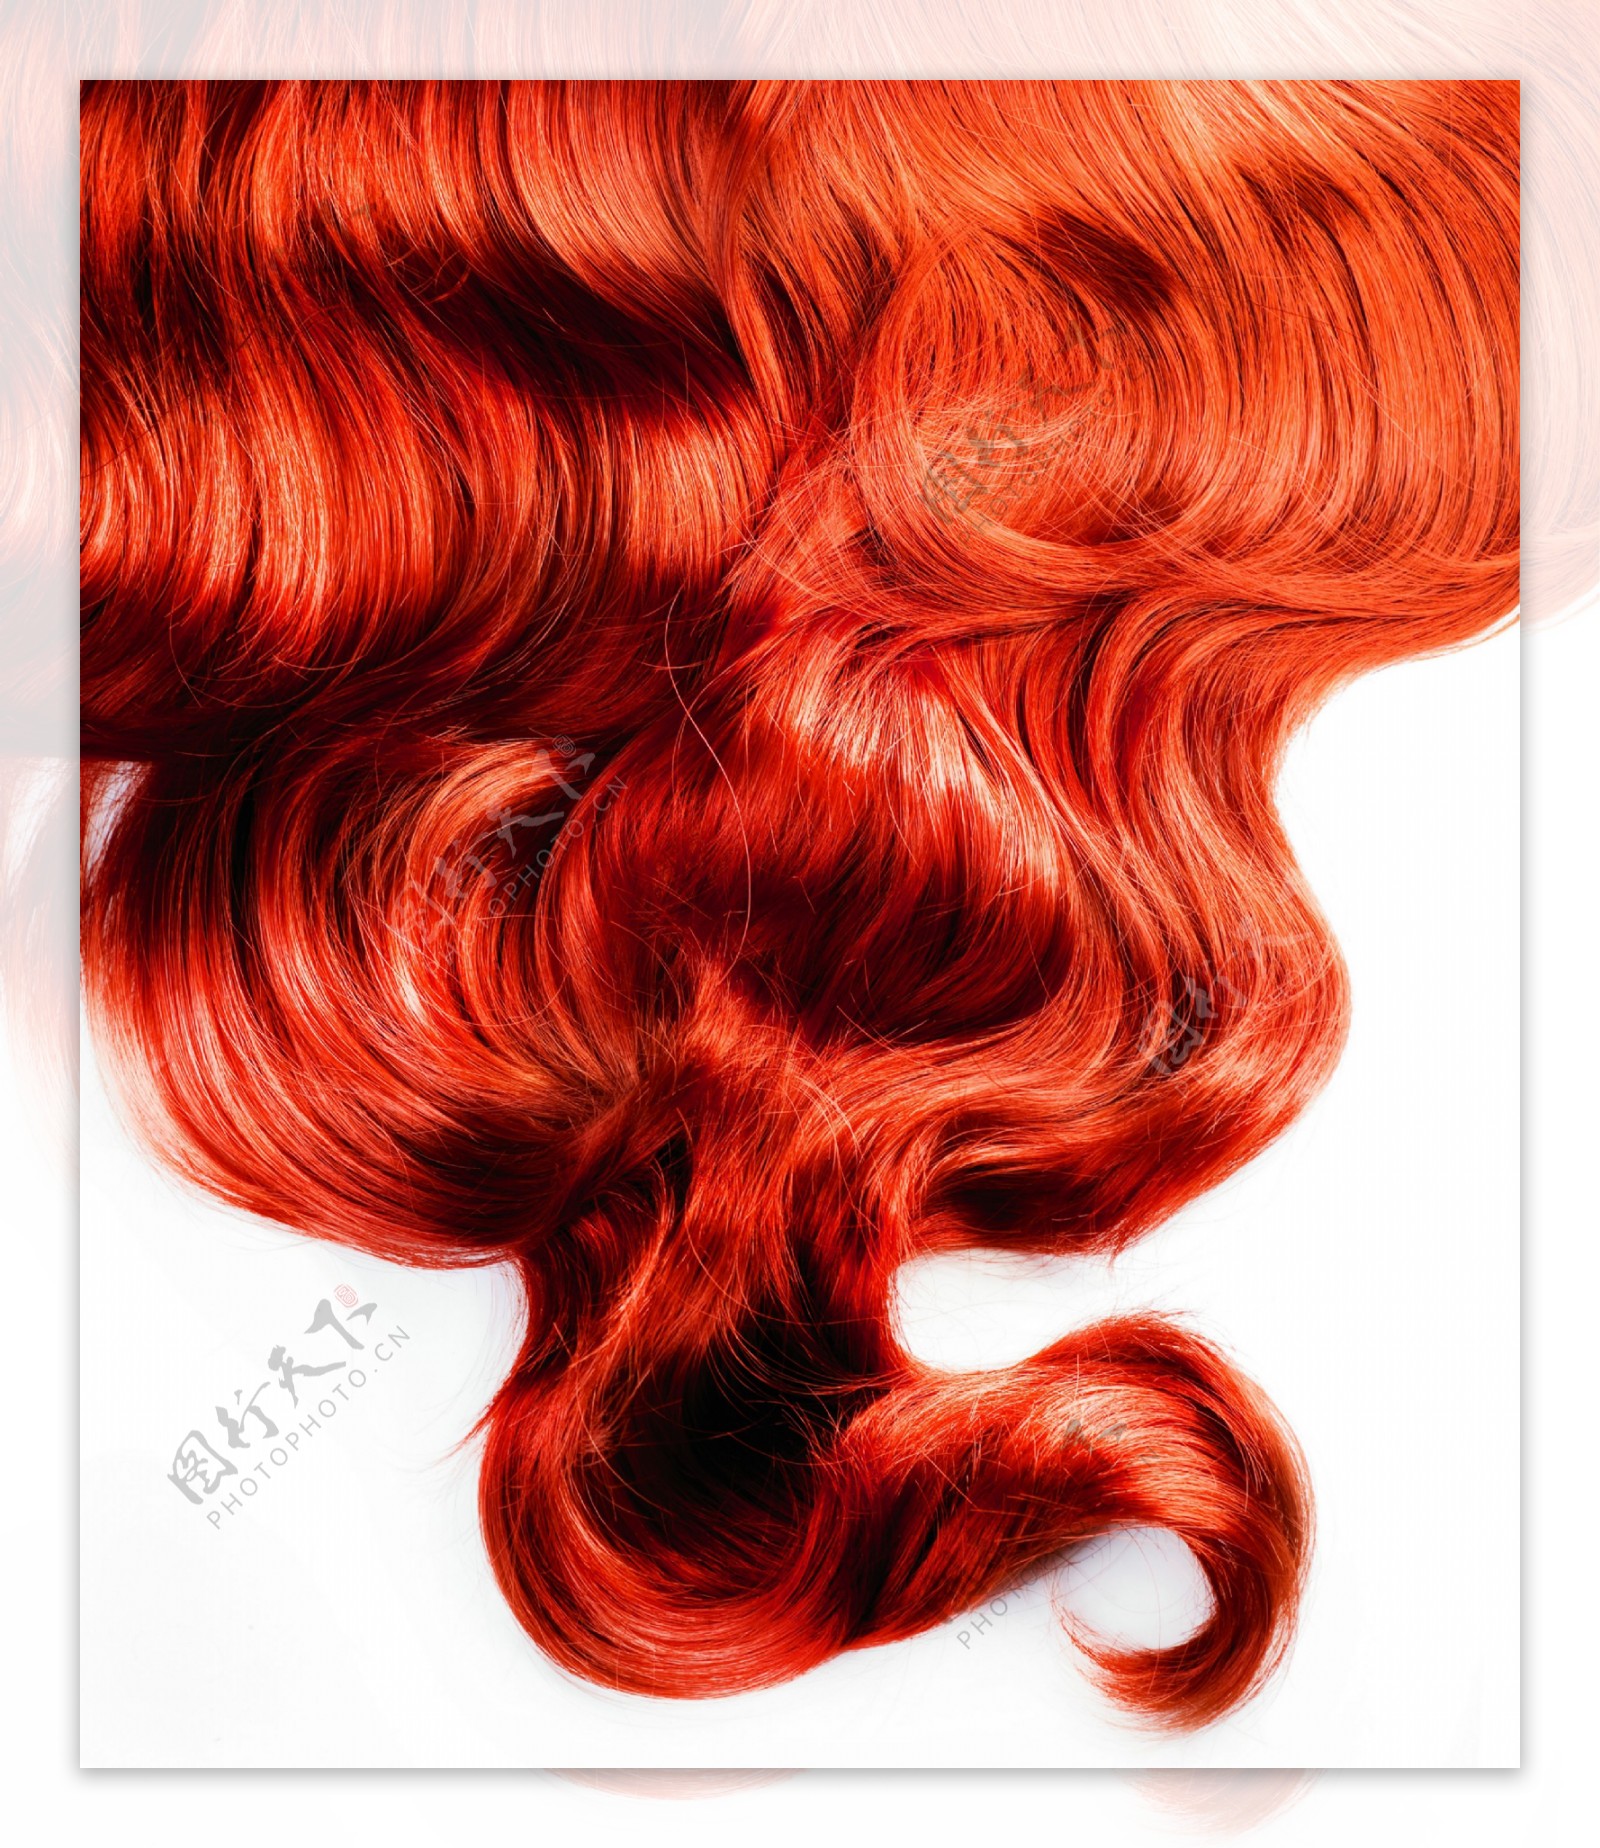 孙怡红色长发造型优雅灵动写真 - 哔哩哔哩